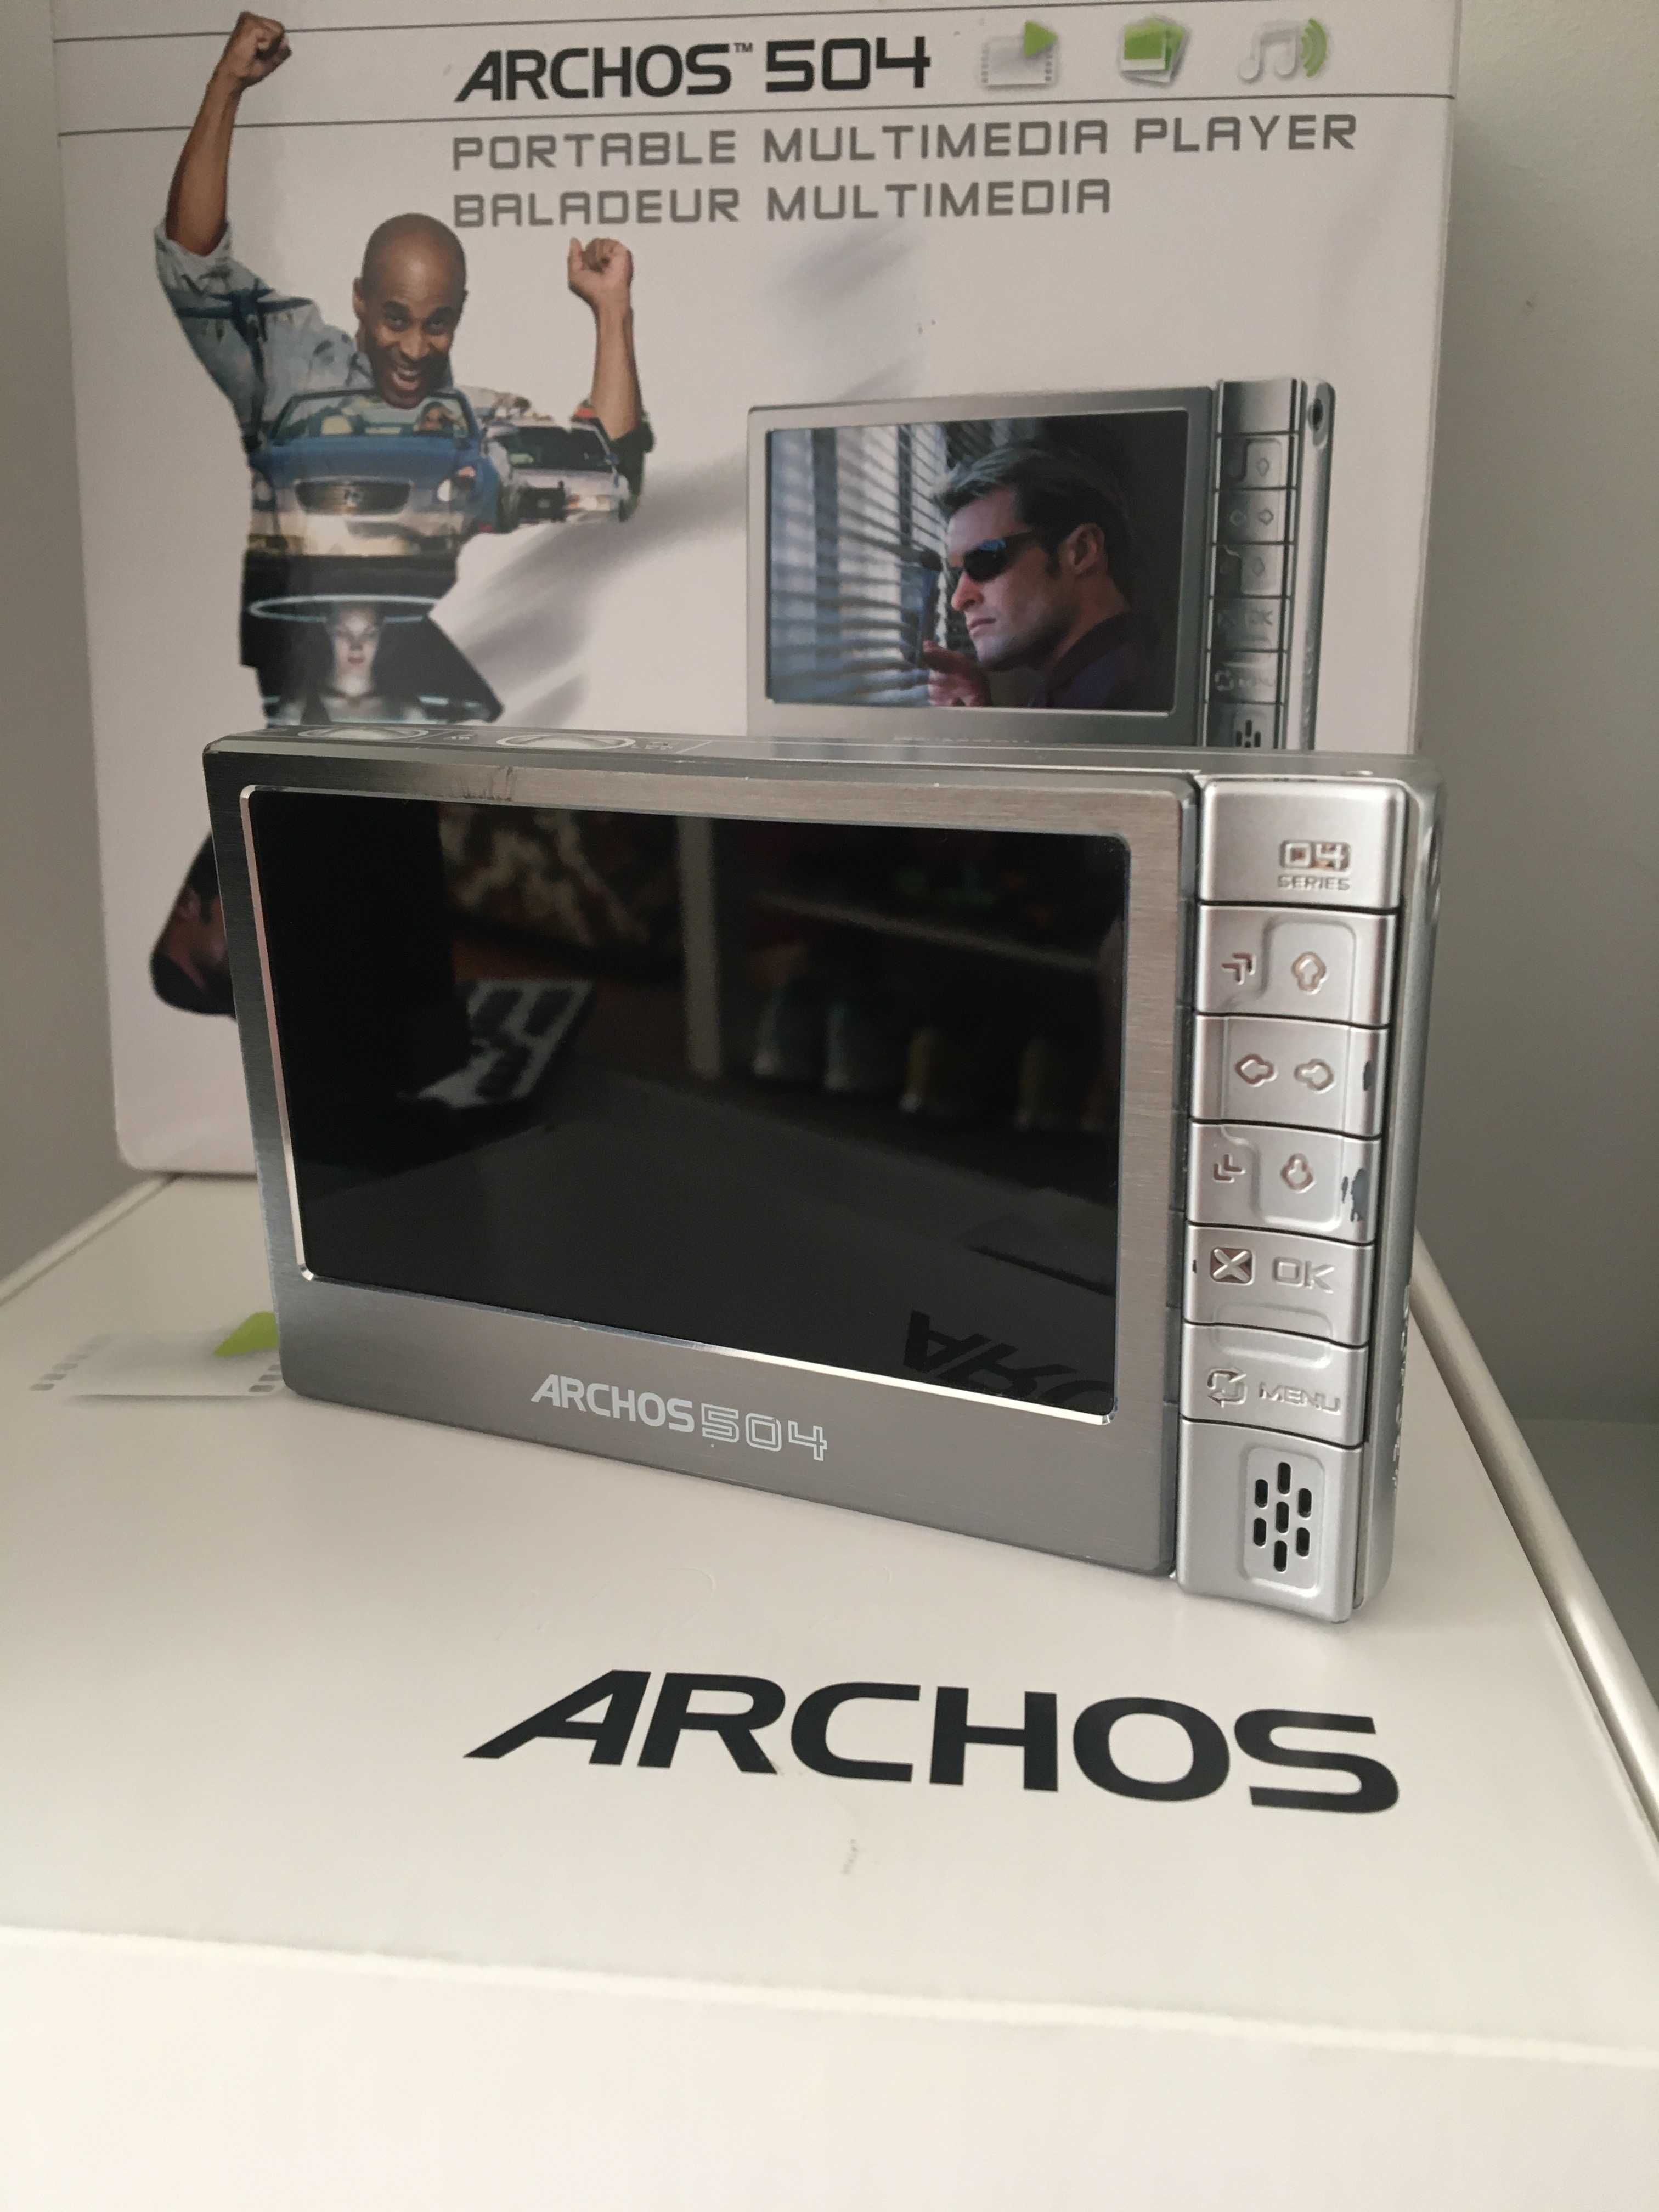 Archos 504 Multimedia Player 80 gb video/audio în ambalajul original